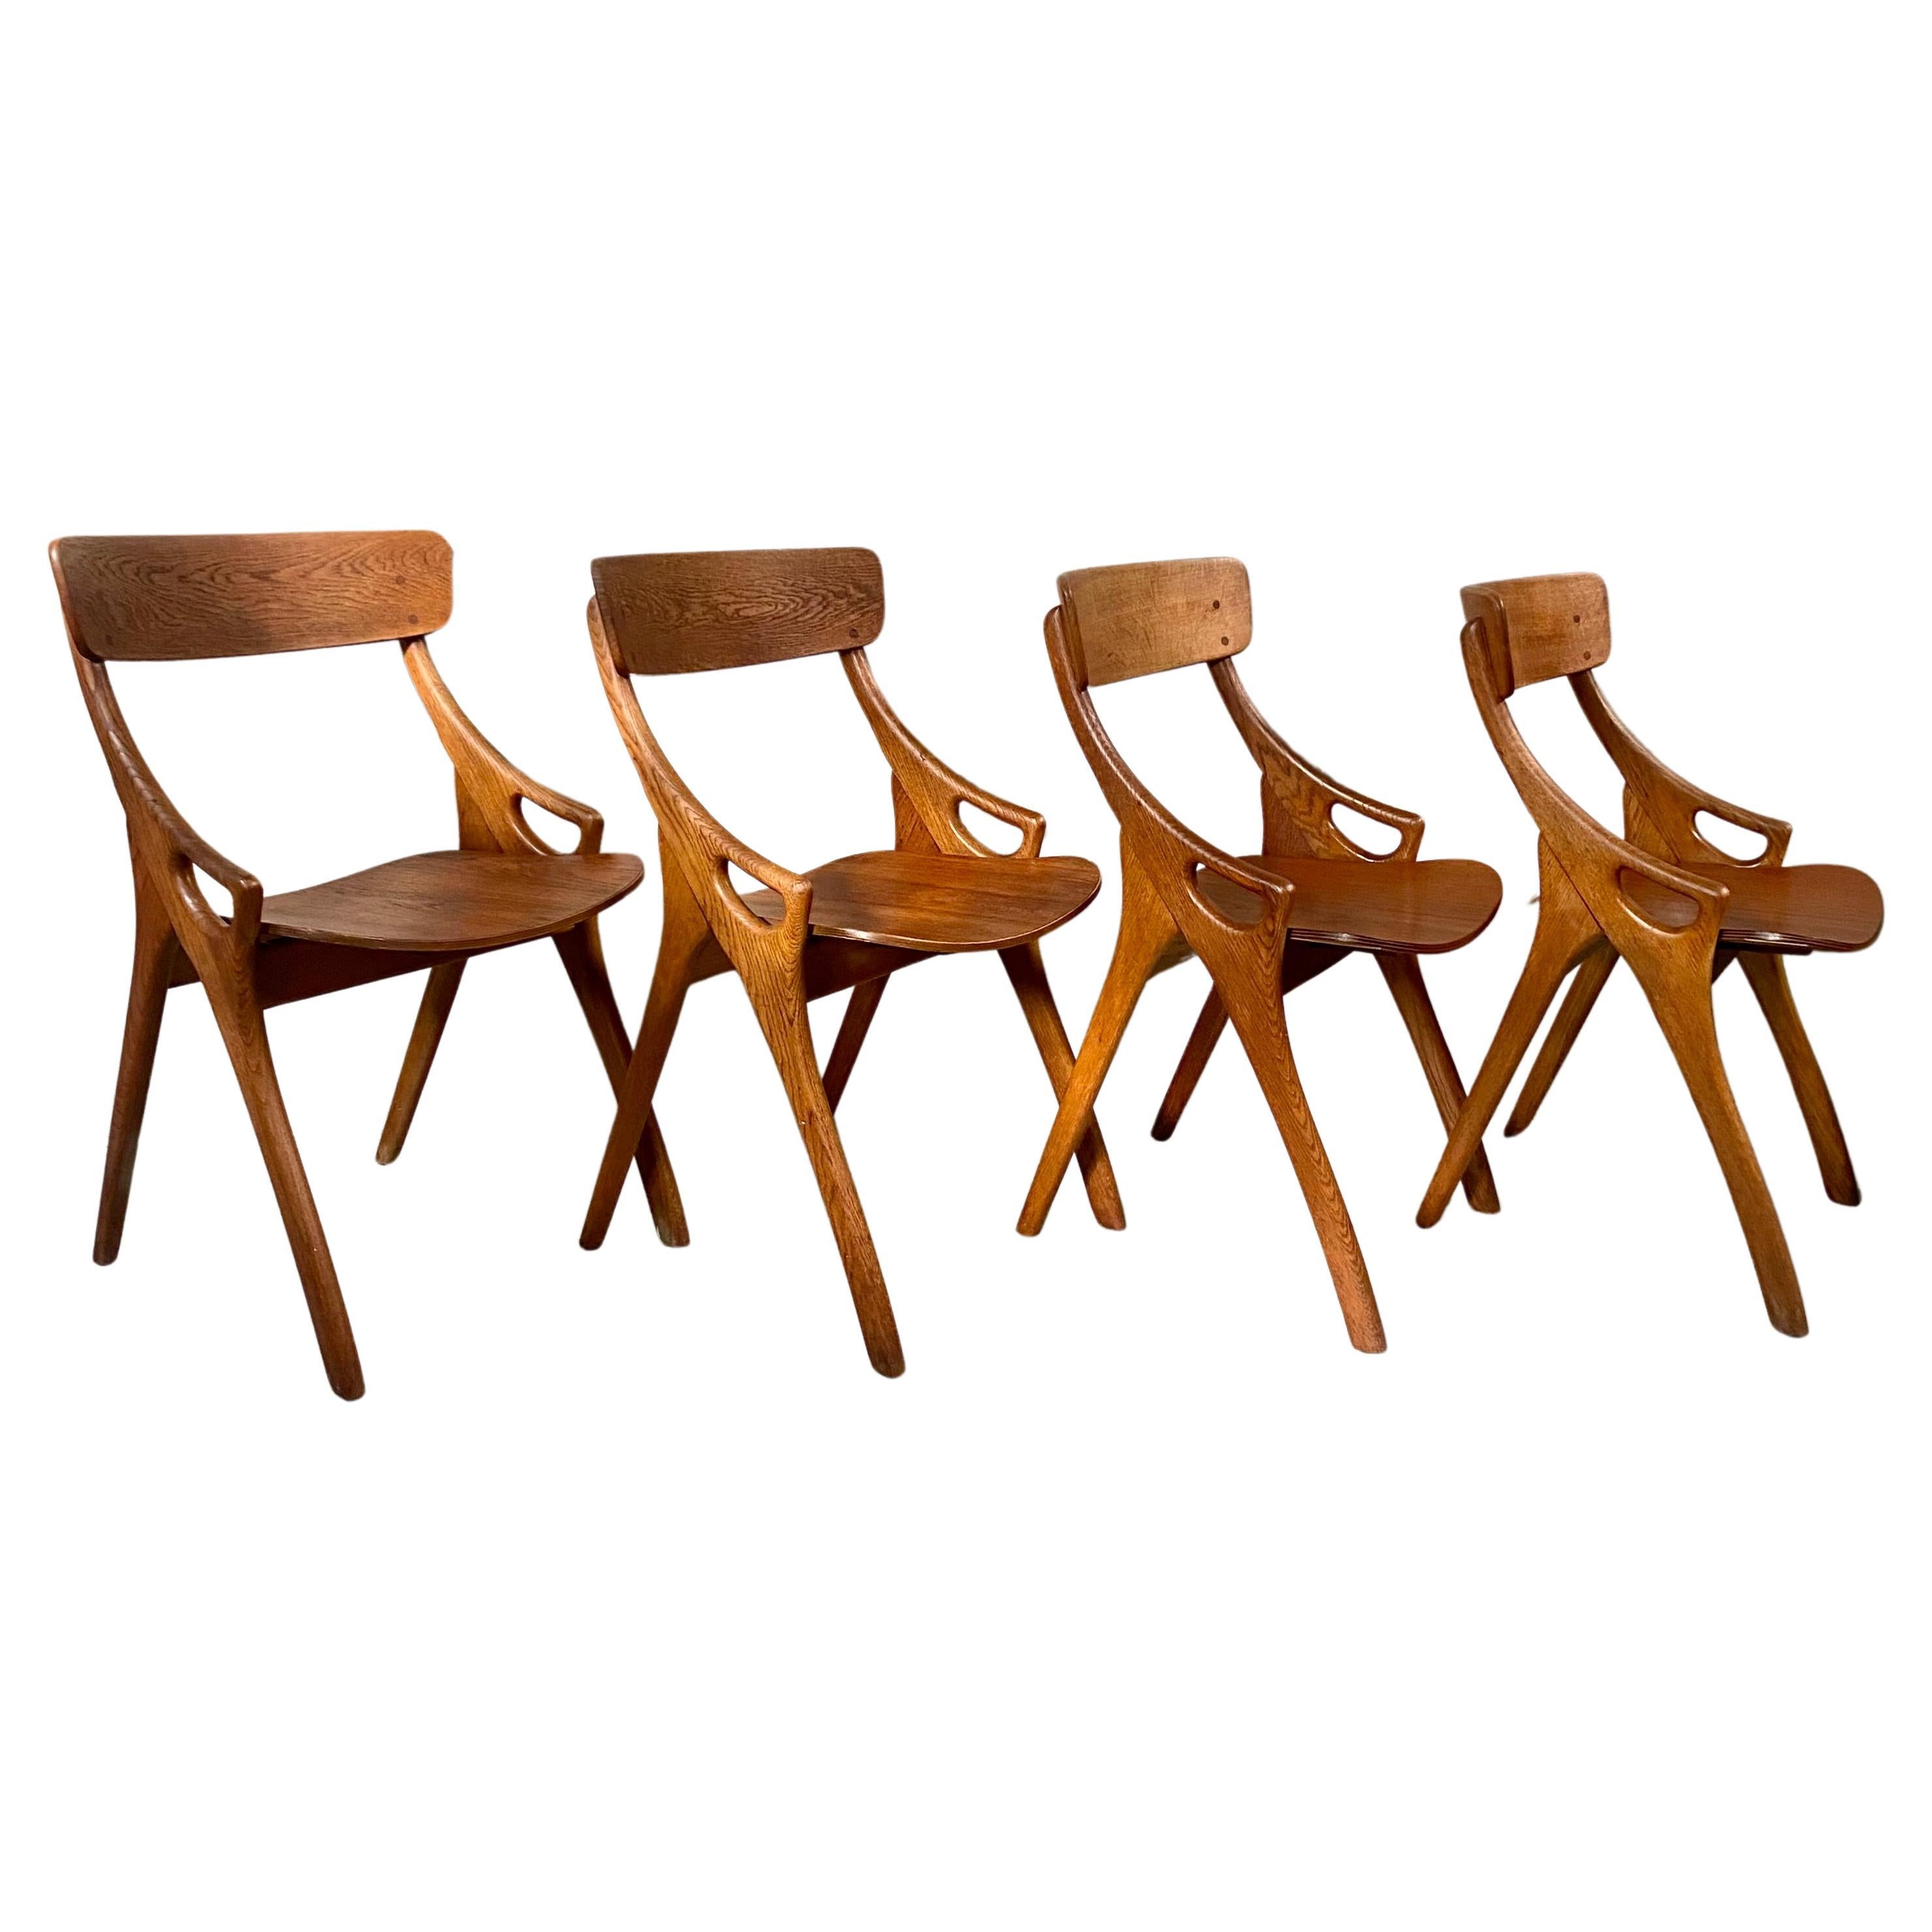 4 Rustic Oak Arne Hovmand Olsen Dining Chairs for Mogens Kold Mobelfabrik 1950